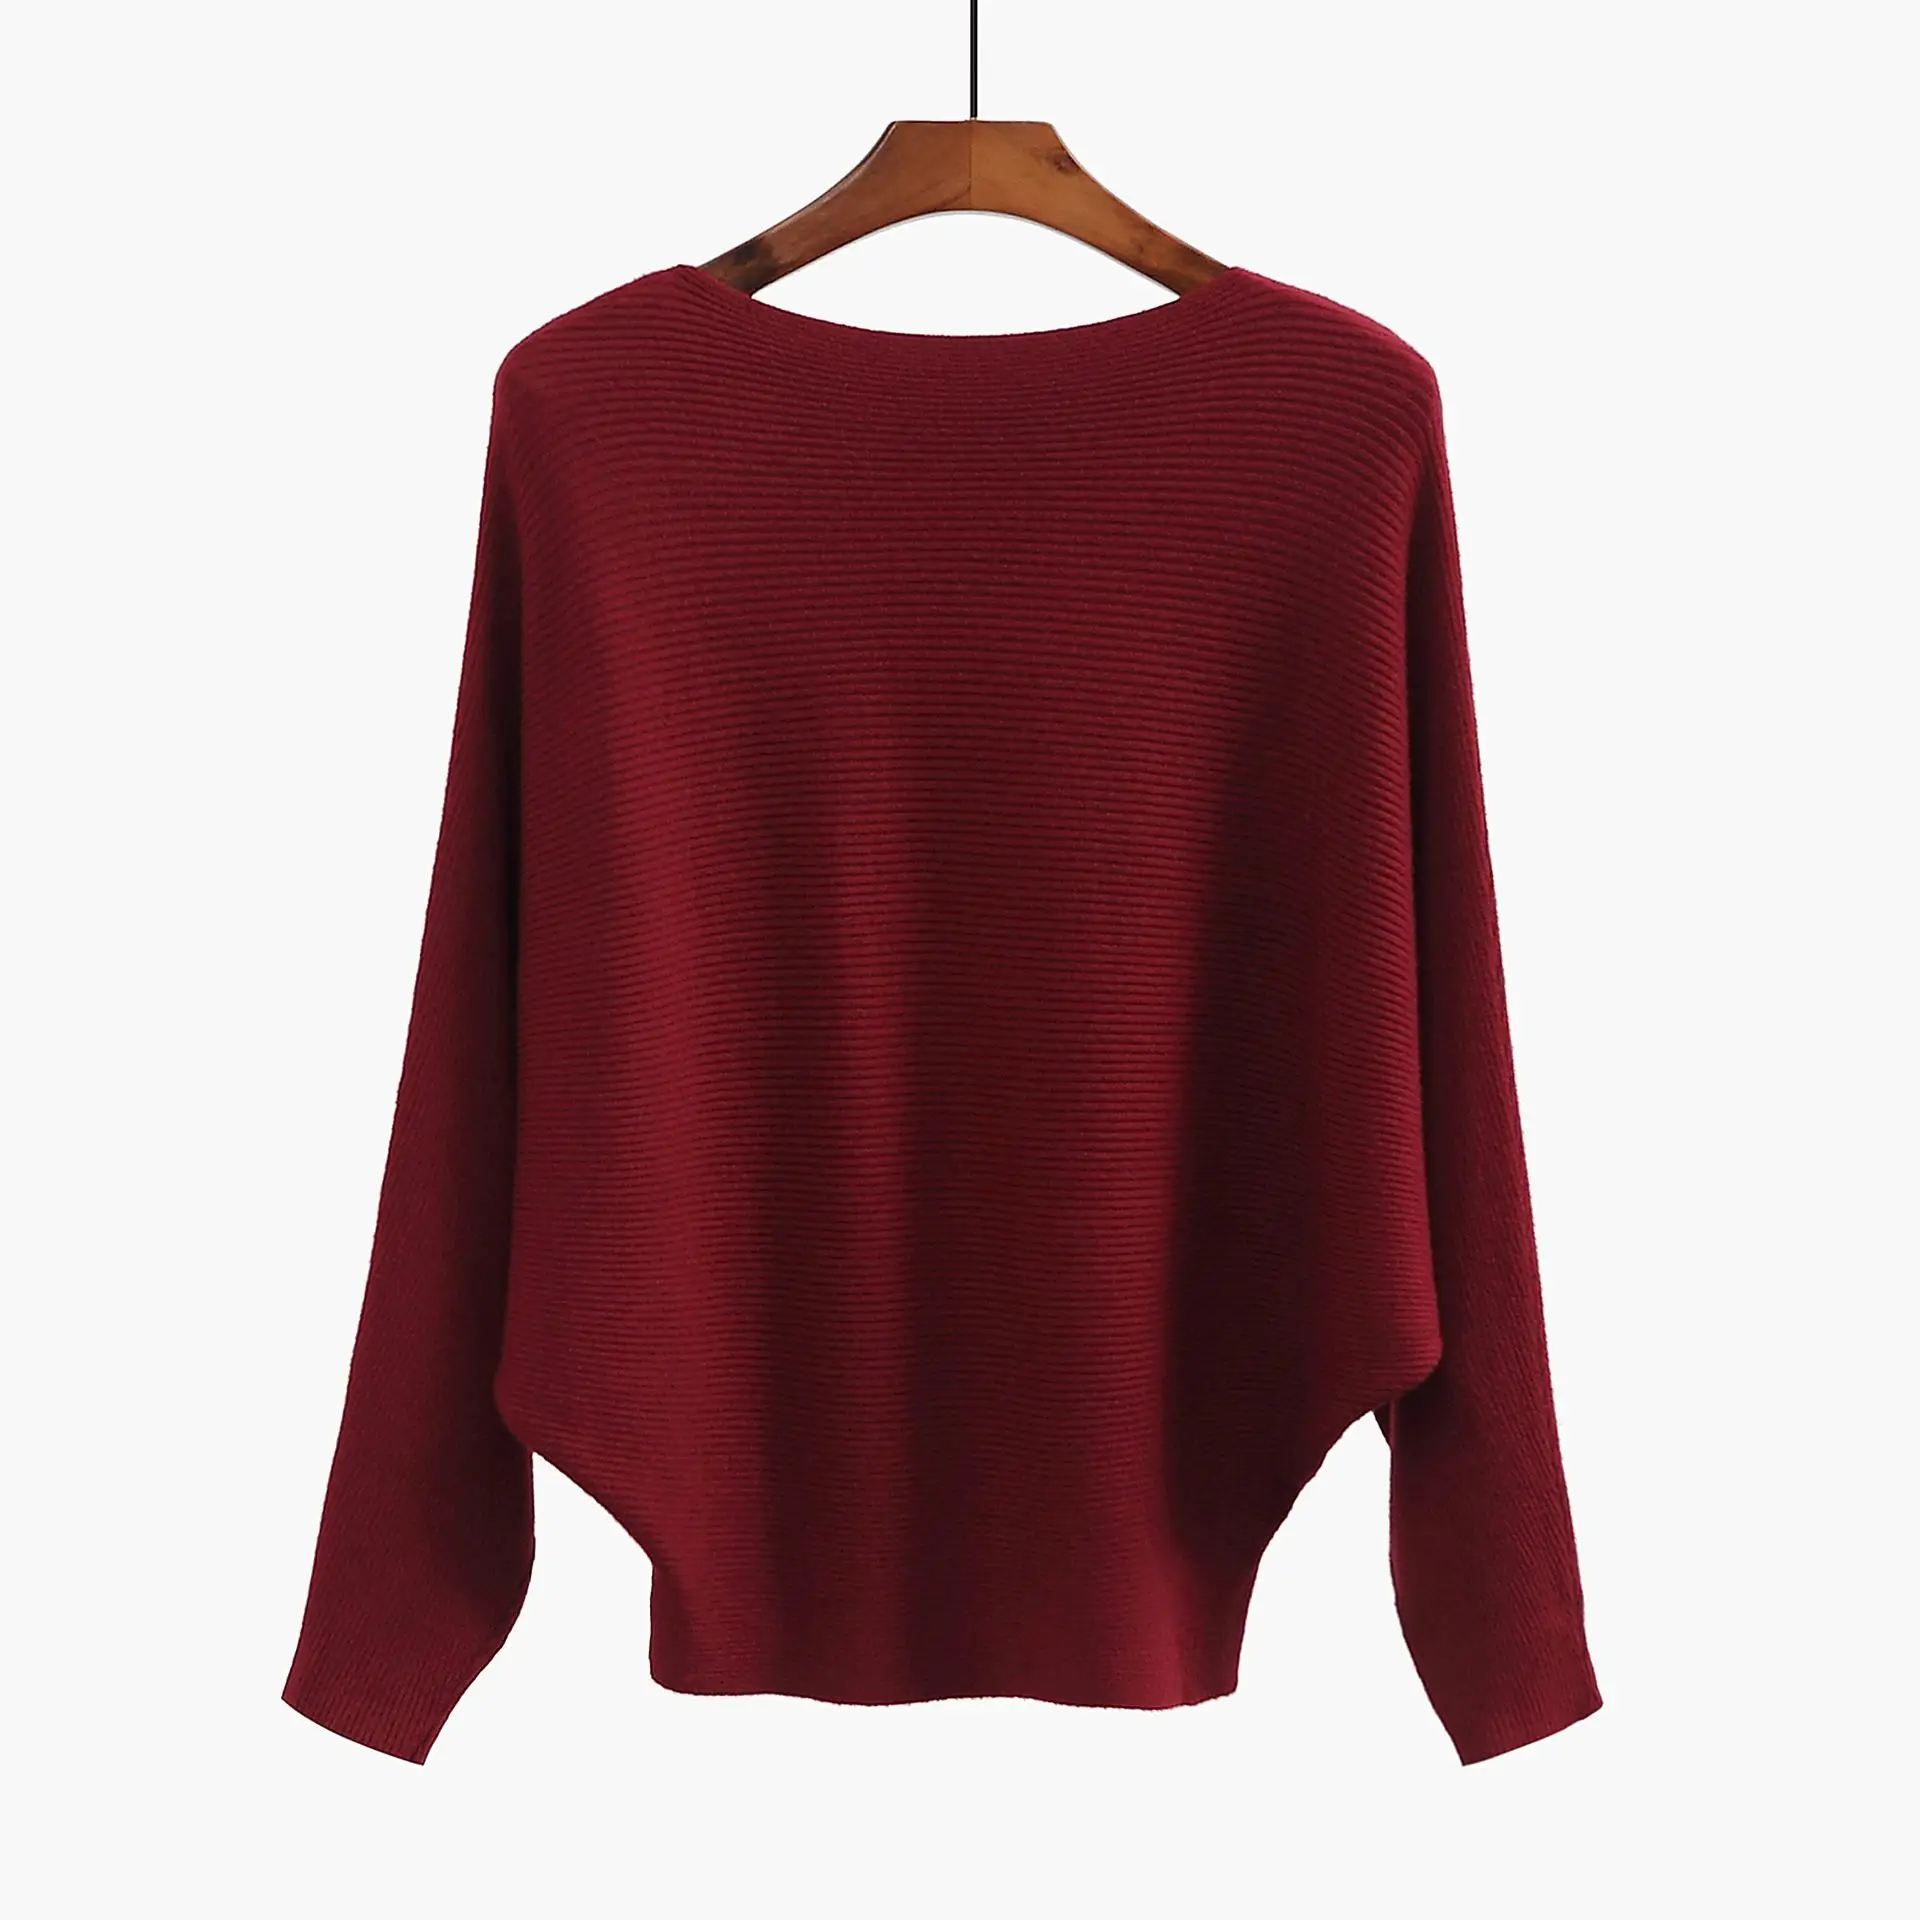 Осенний пуловер с вырезом лодочкой, женский свитер, однотонный, серый, хаки, рукав летучая мышь, вязанная блузка для женщин, свободные повседневные топы для девушек, GJ266 - Цвет: Бургундия